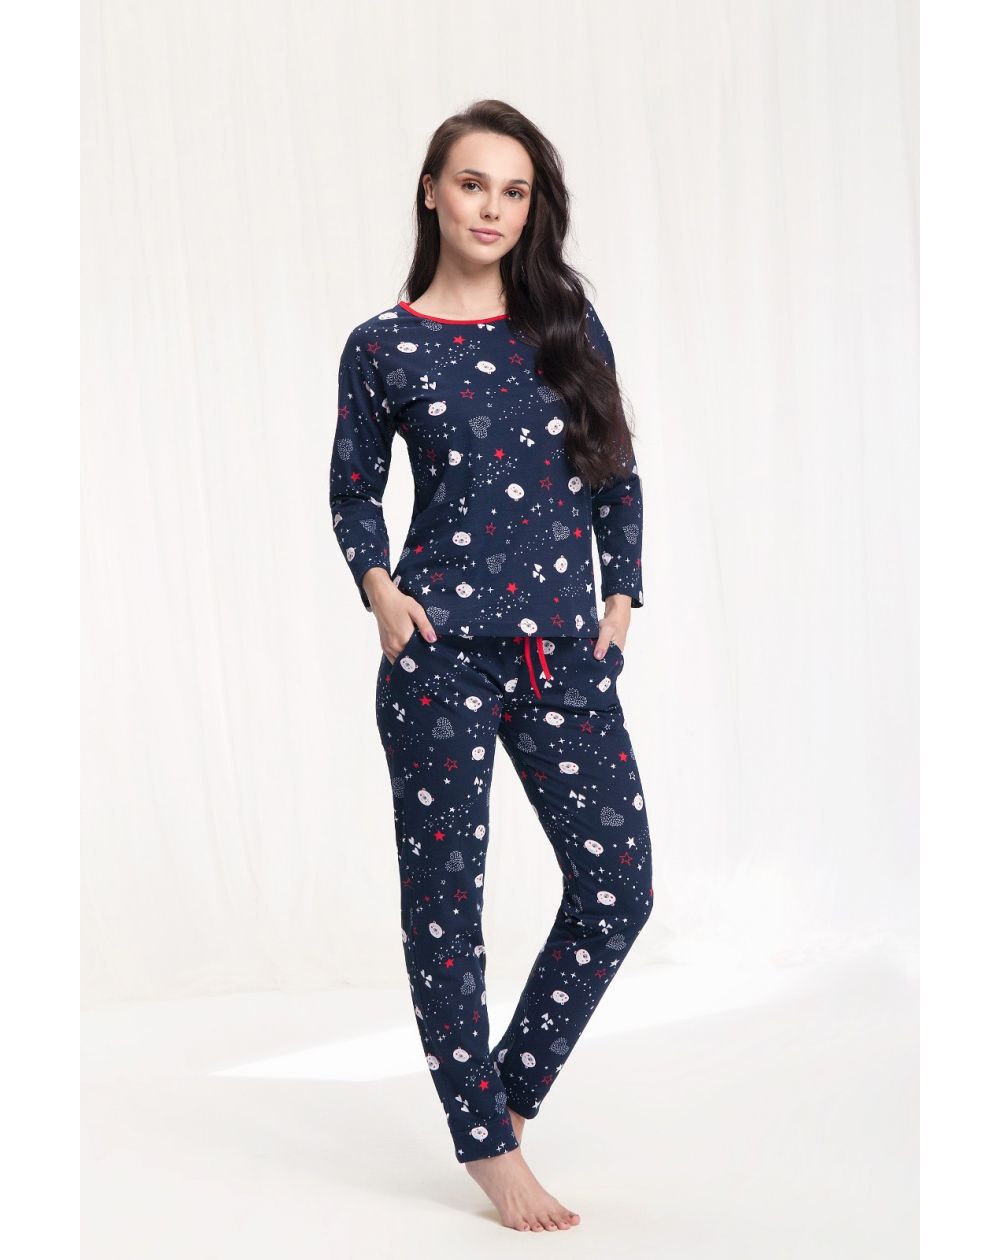 Pijama Luna 480 largo / y S-2XL para mujer